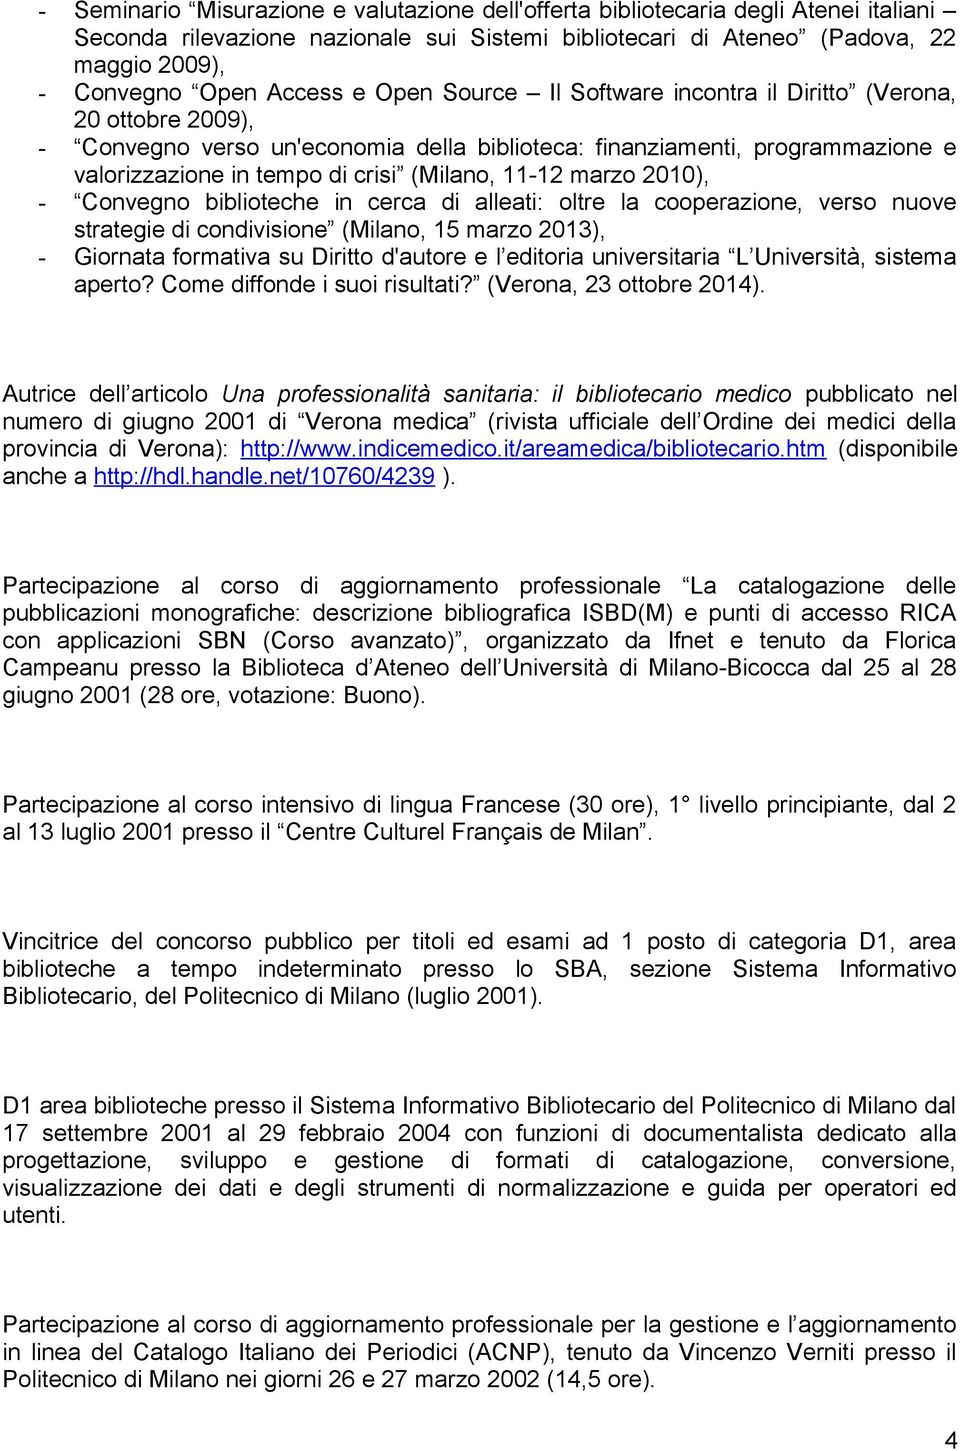 (Milano, 11-12 marzo 2010), - Convegno biblioteche in cerca di alleati: oltre la cooperazione, verso nuove strategie di condivisione (Milano, 15 marzo 2013), - Giornata formativa su Diritto d'autore